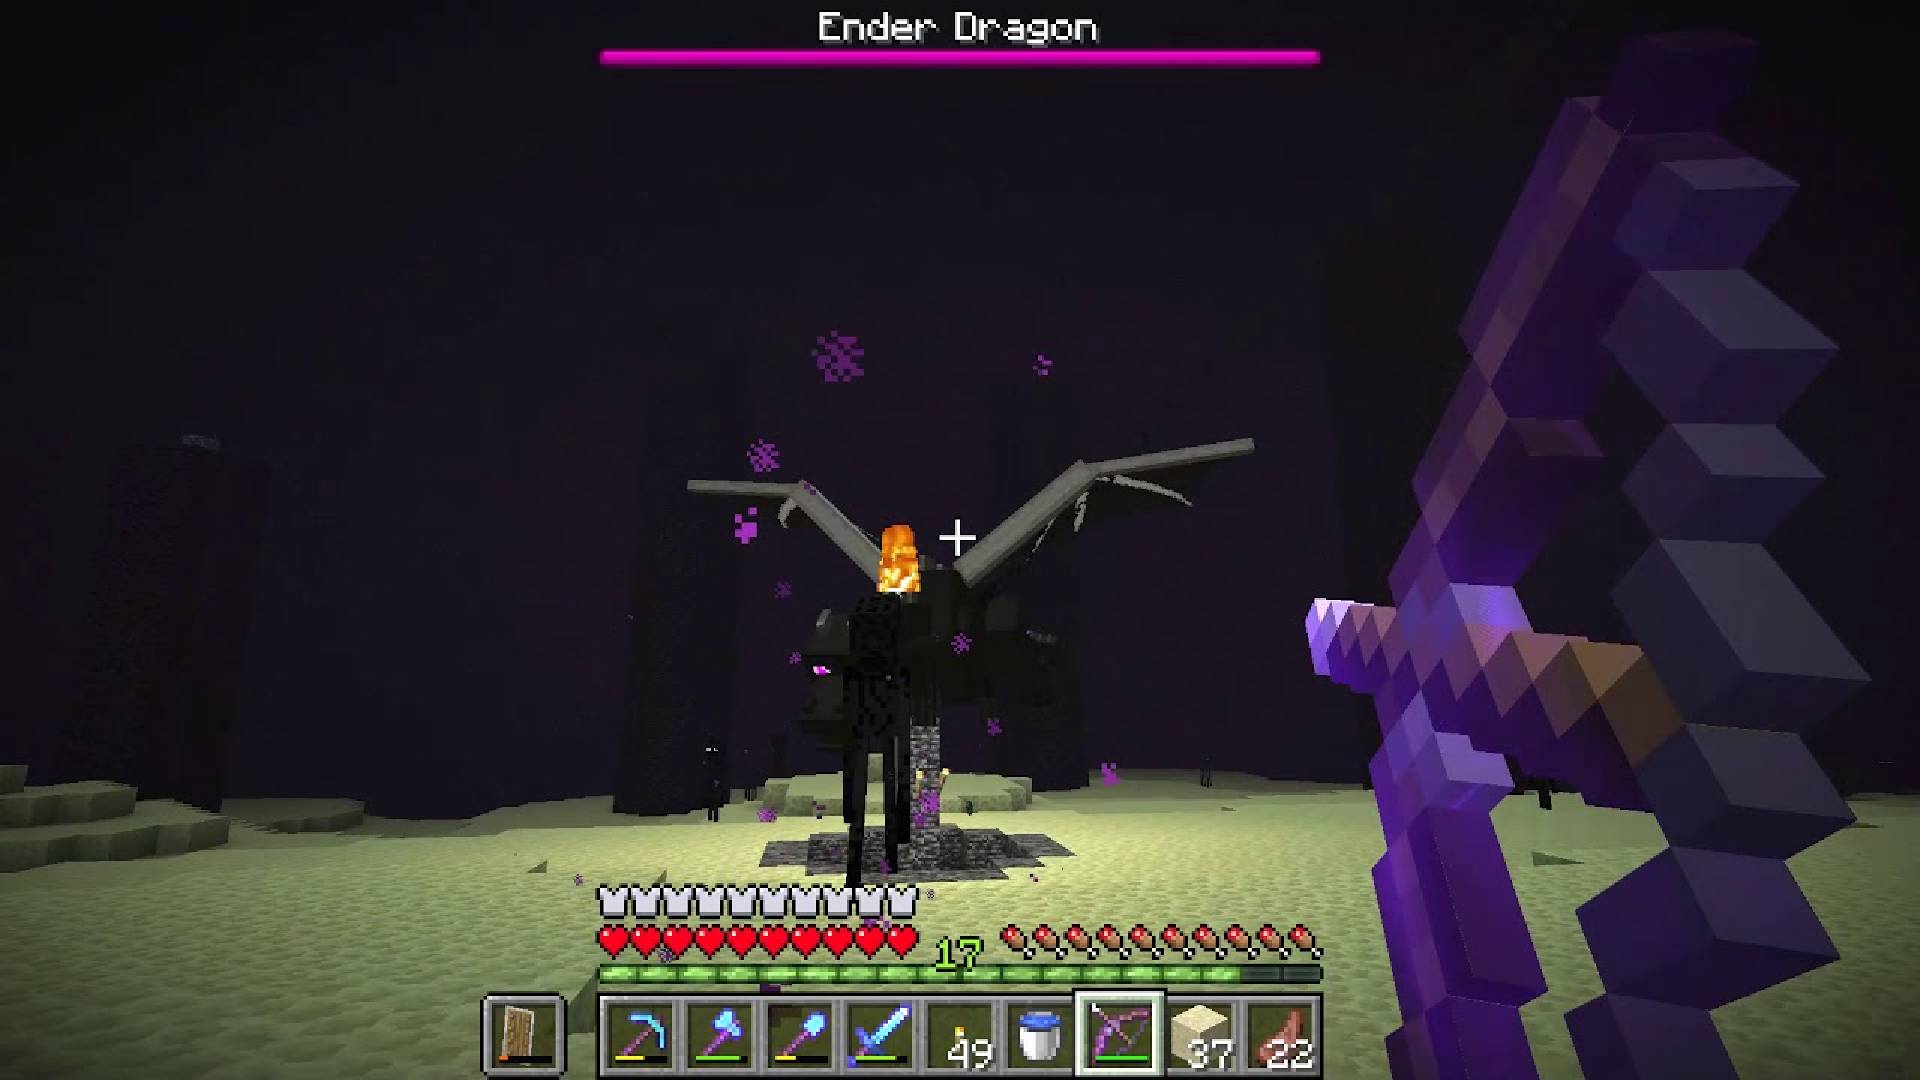 Minecraft-Ender-Drache: Ein Bild von Minecraft zeigt einen Spieler, der den riesigen Drachenfeind angreift, der als Ender-Drache bekannt ist